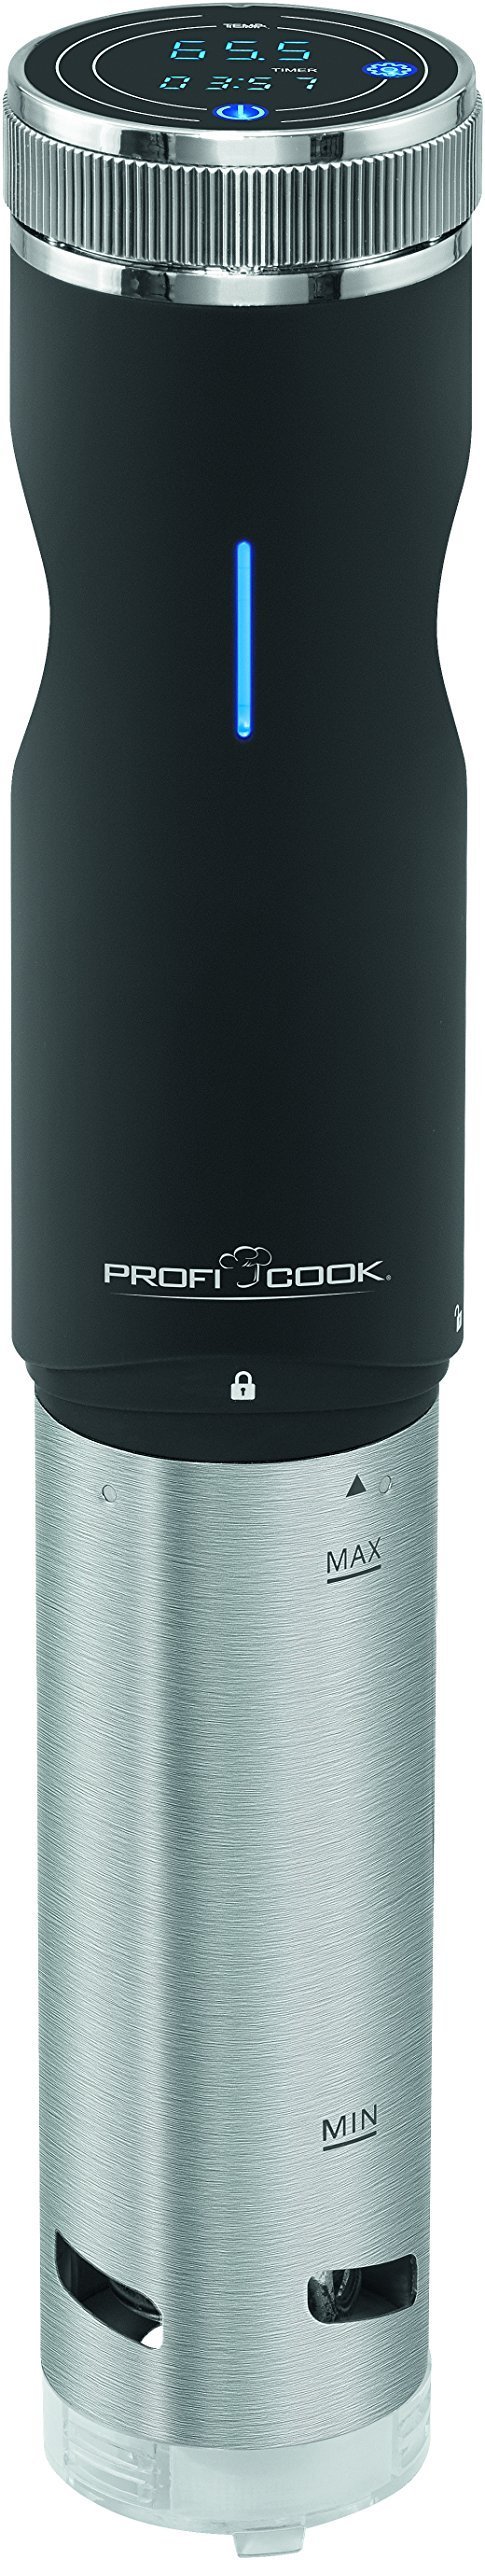 primeԱProfi Cook PC-SV 1126  722.74 +86.01722.7486.01